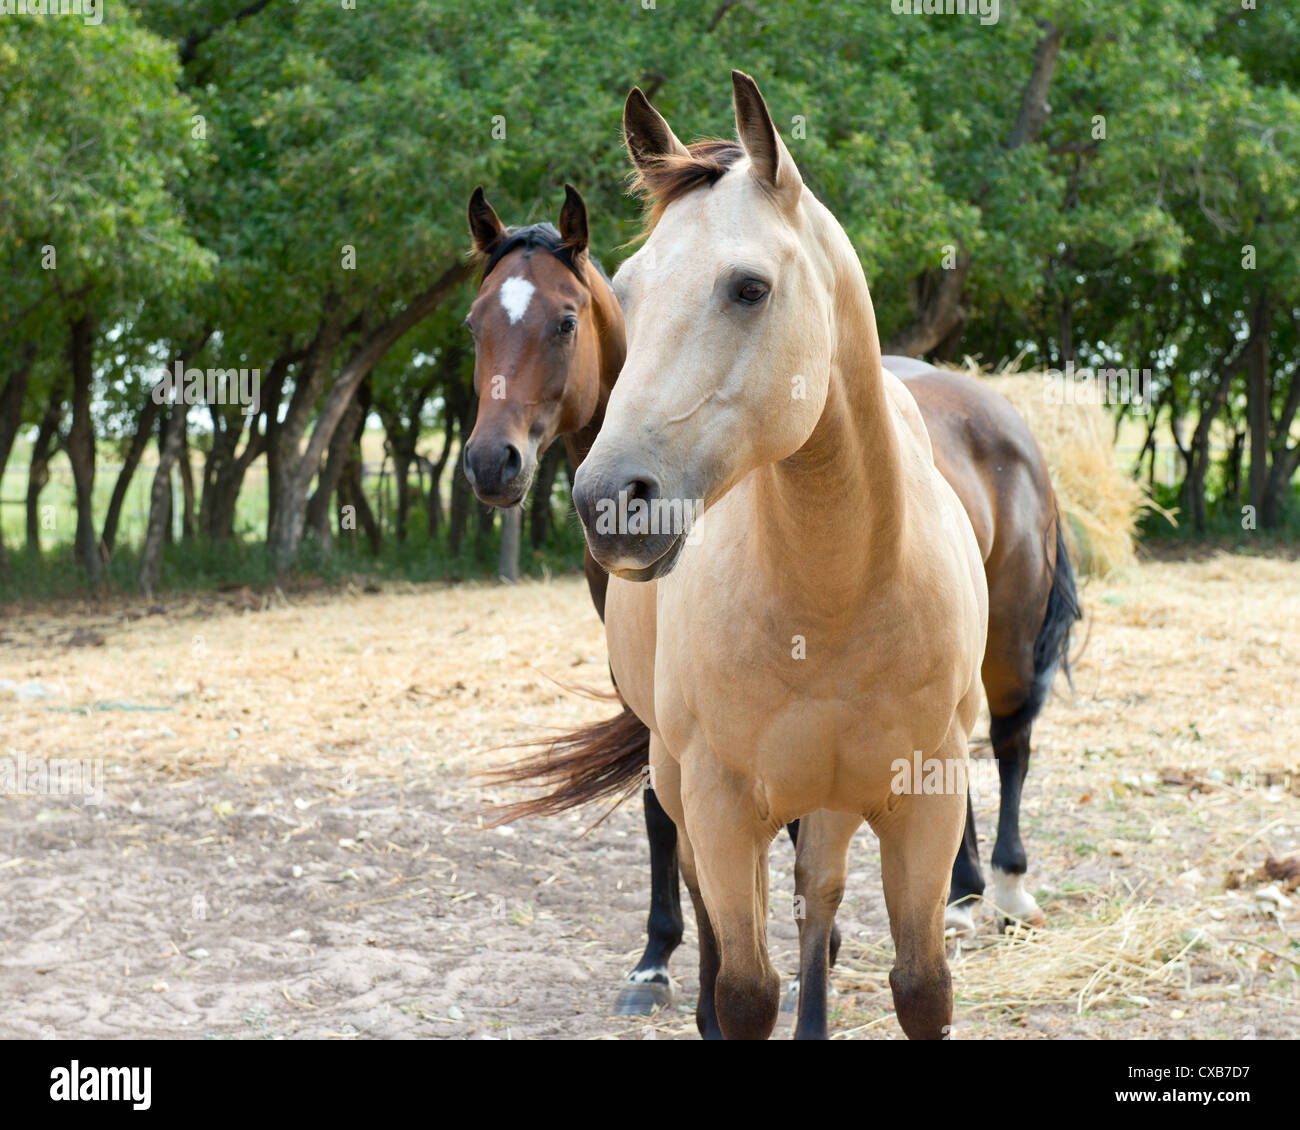 Deux American Quarter Horses, un daim et un bay, Equus caballus, debout dans un corral avec le foin. New York, USA Banque D'Images